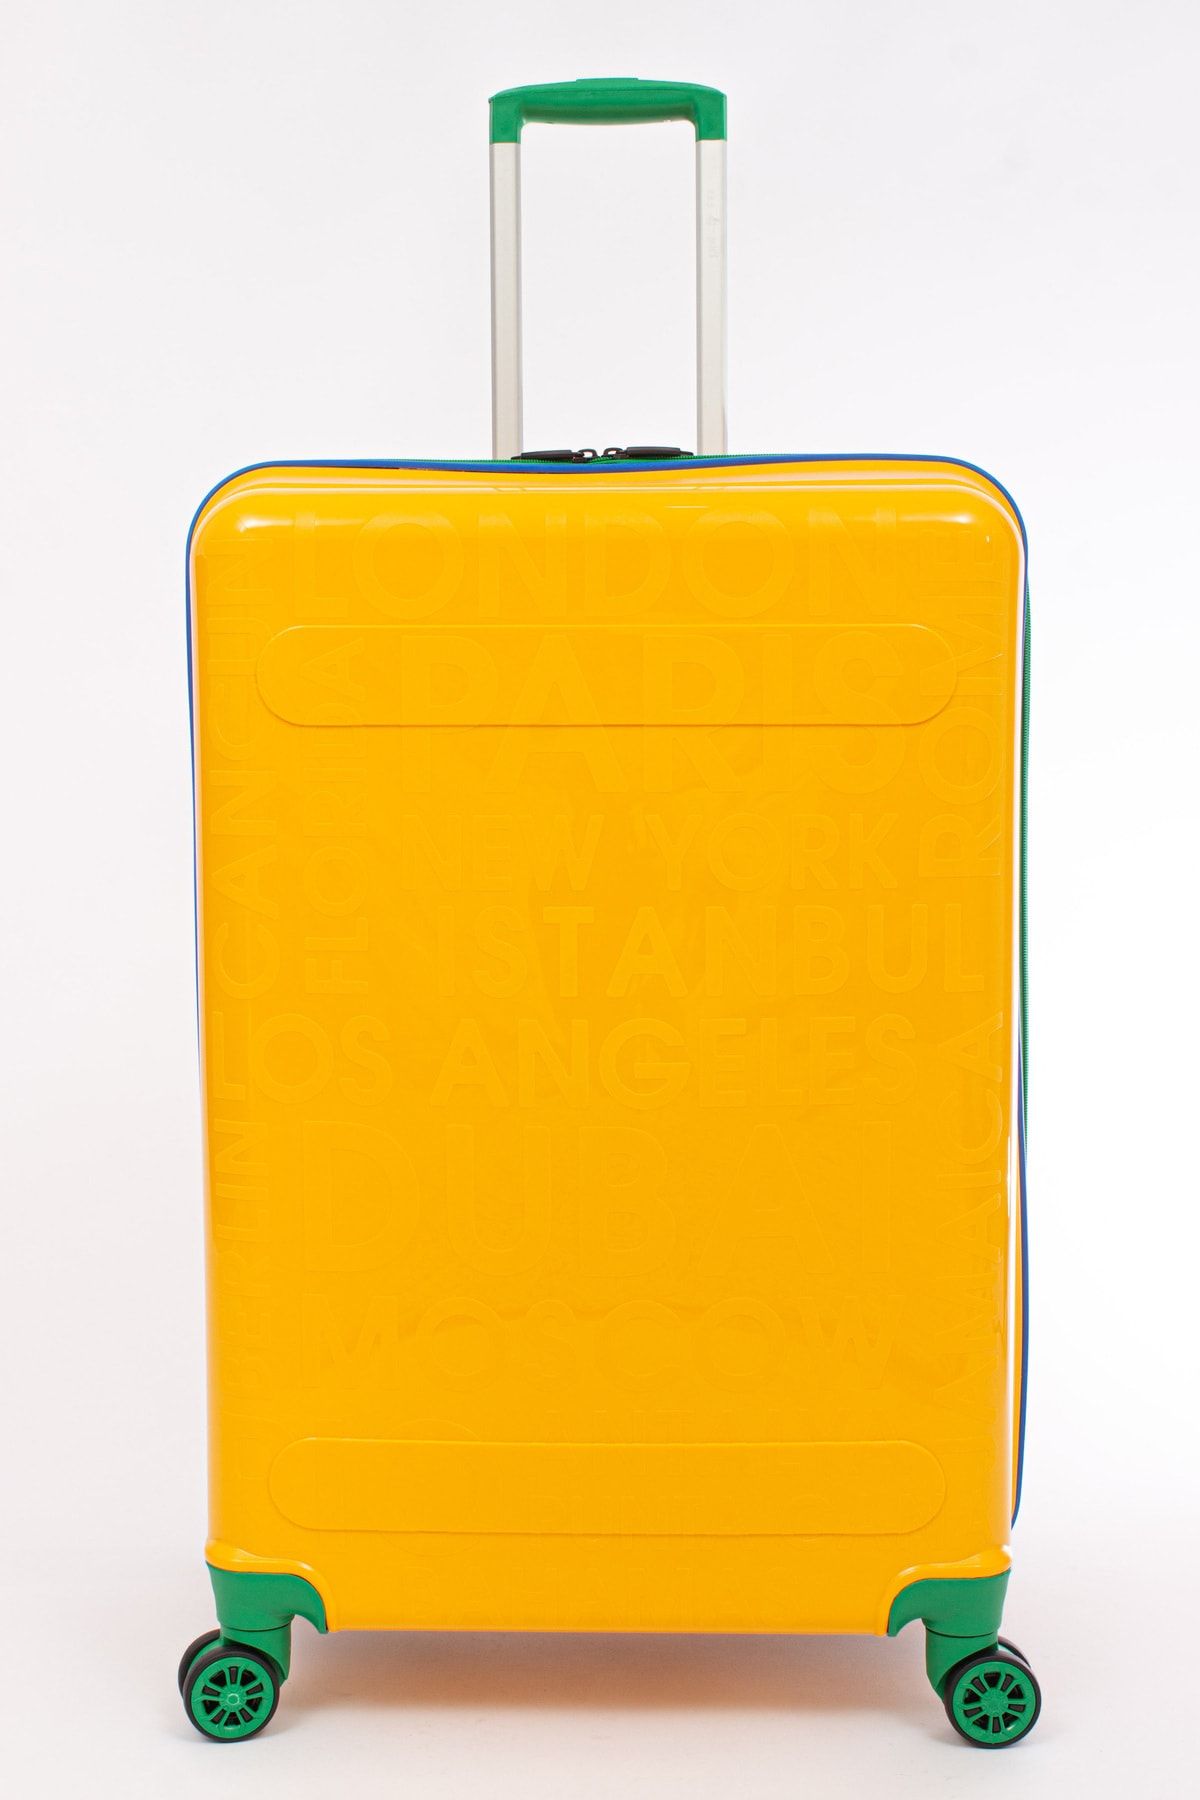 KAFF Albatros Cap Polo's Sarı 4 Teker PP 112 Kırılmaz Dayanıklı Orta Boy Valiz & Bavul